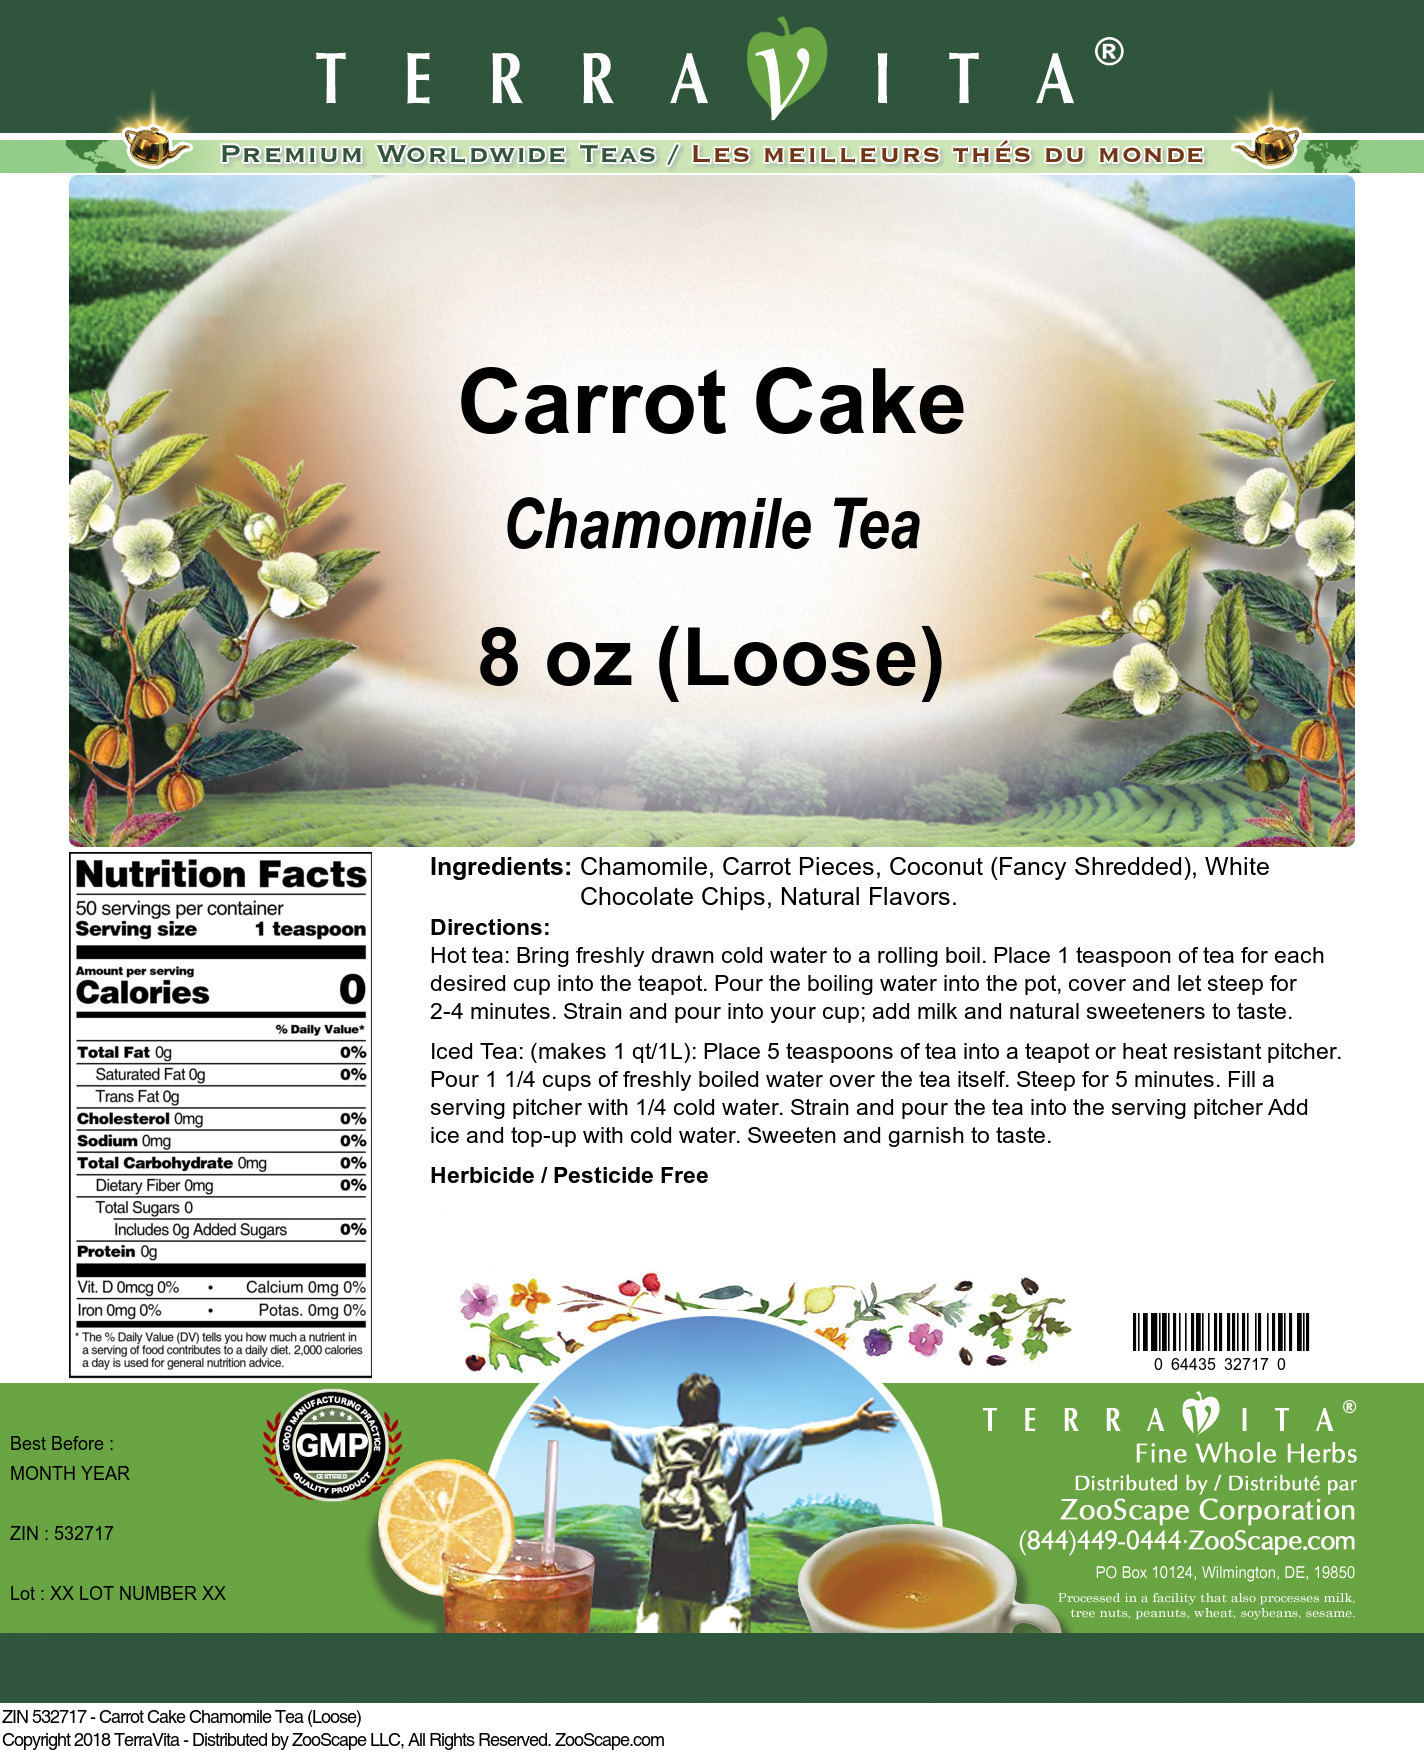 Carrot Cake Chamomile Tea (Loose) - Label